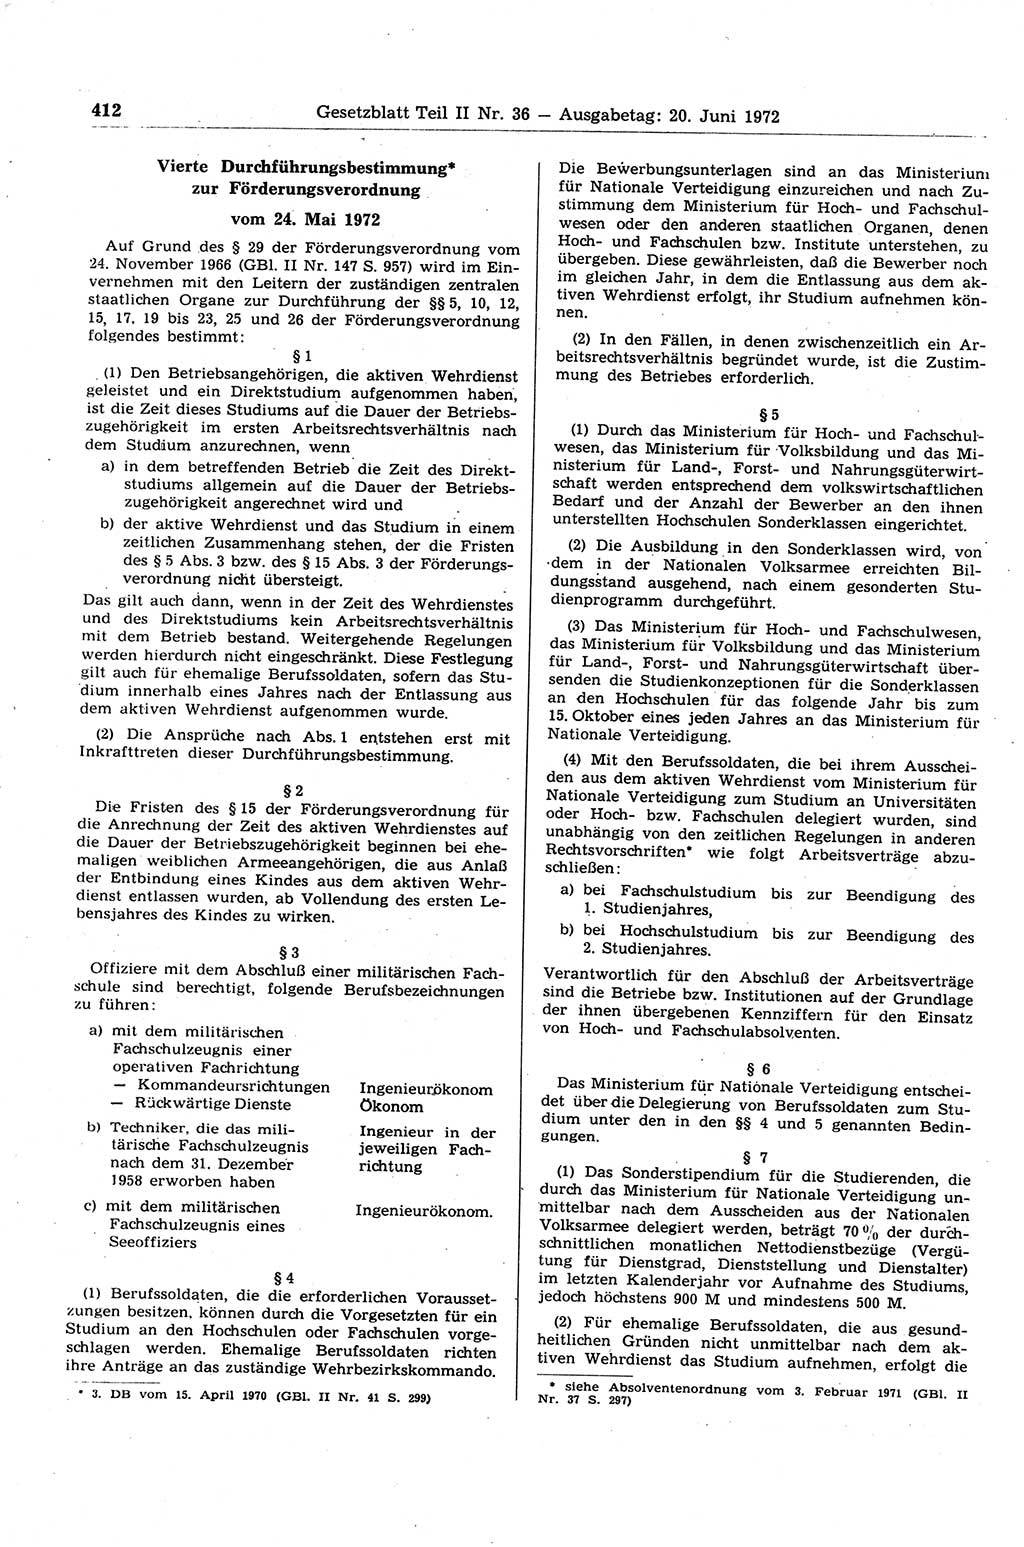 Gesetzblatt (GBl.) der Deutschen Demokratischen Republik (DDR) Teil ⅠⅠ 1972, Seite 412 (GBl. DDR ⅠⅠ 1972, S. 412)